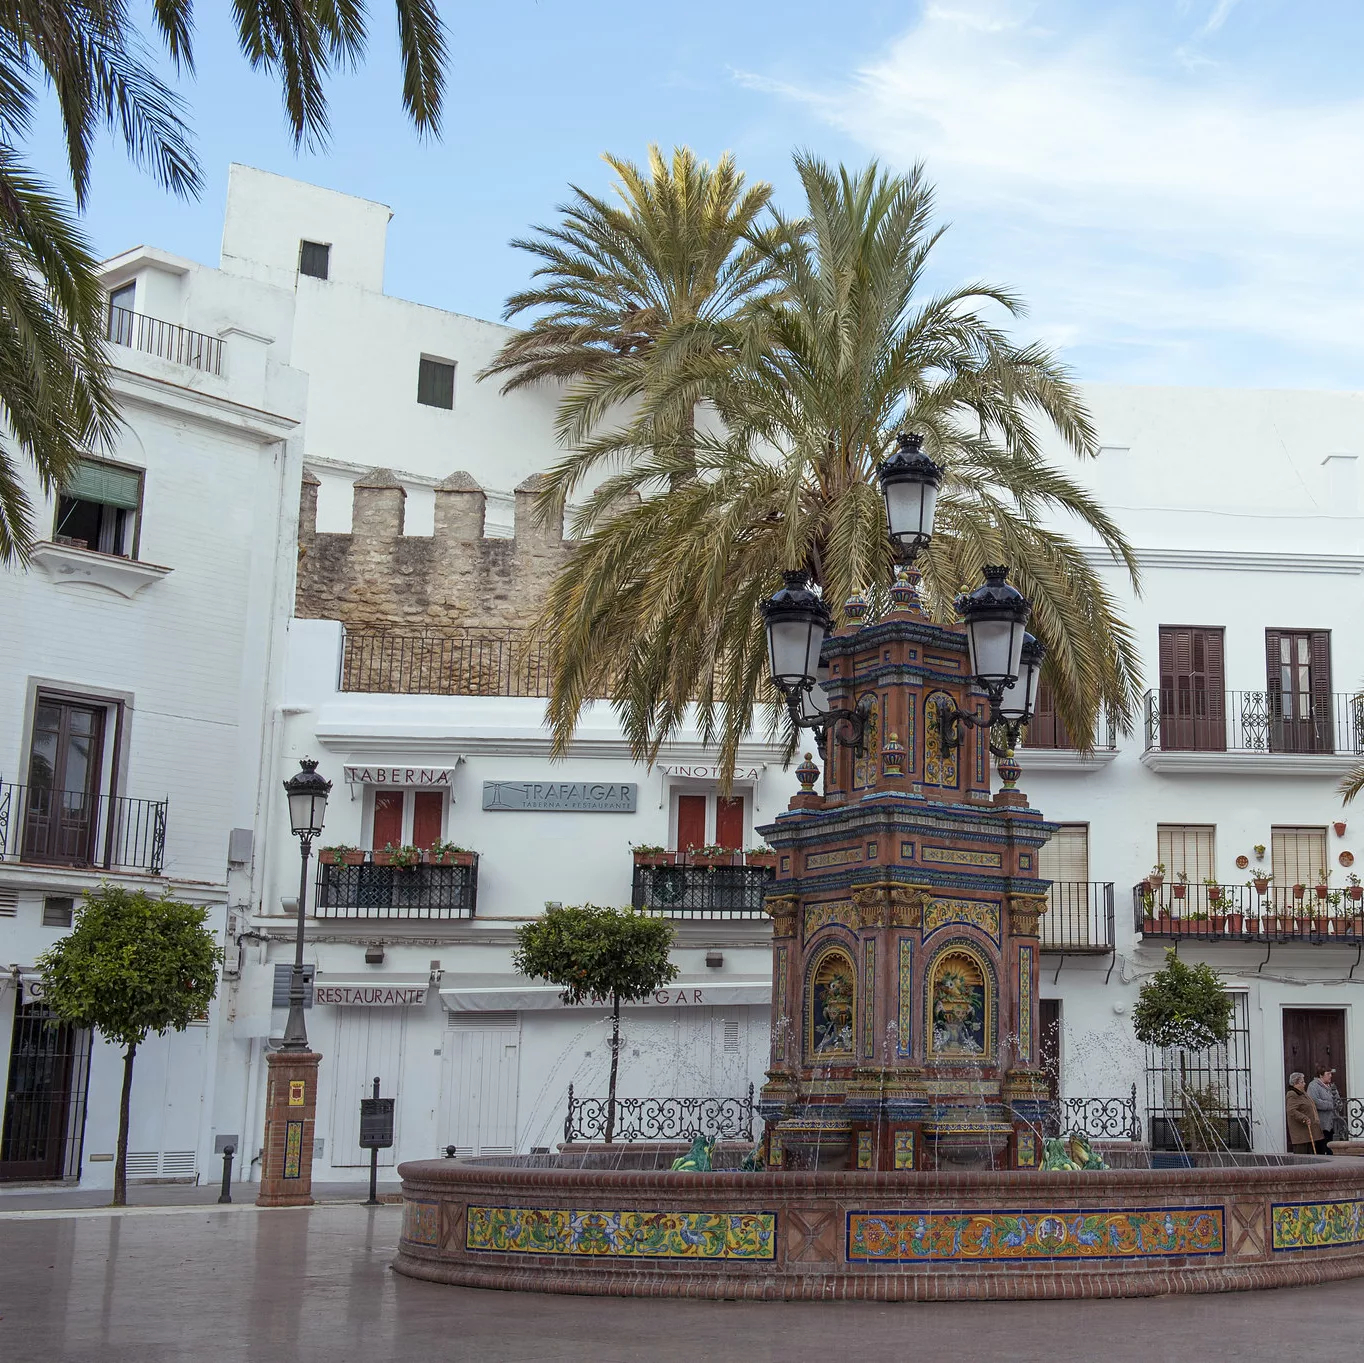 Plaza de Espana in Vejer